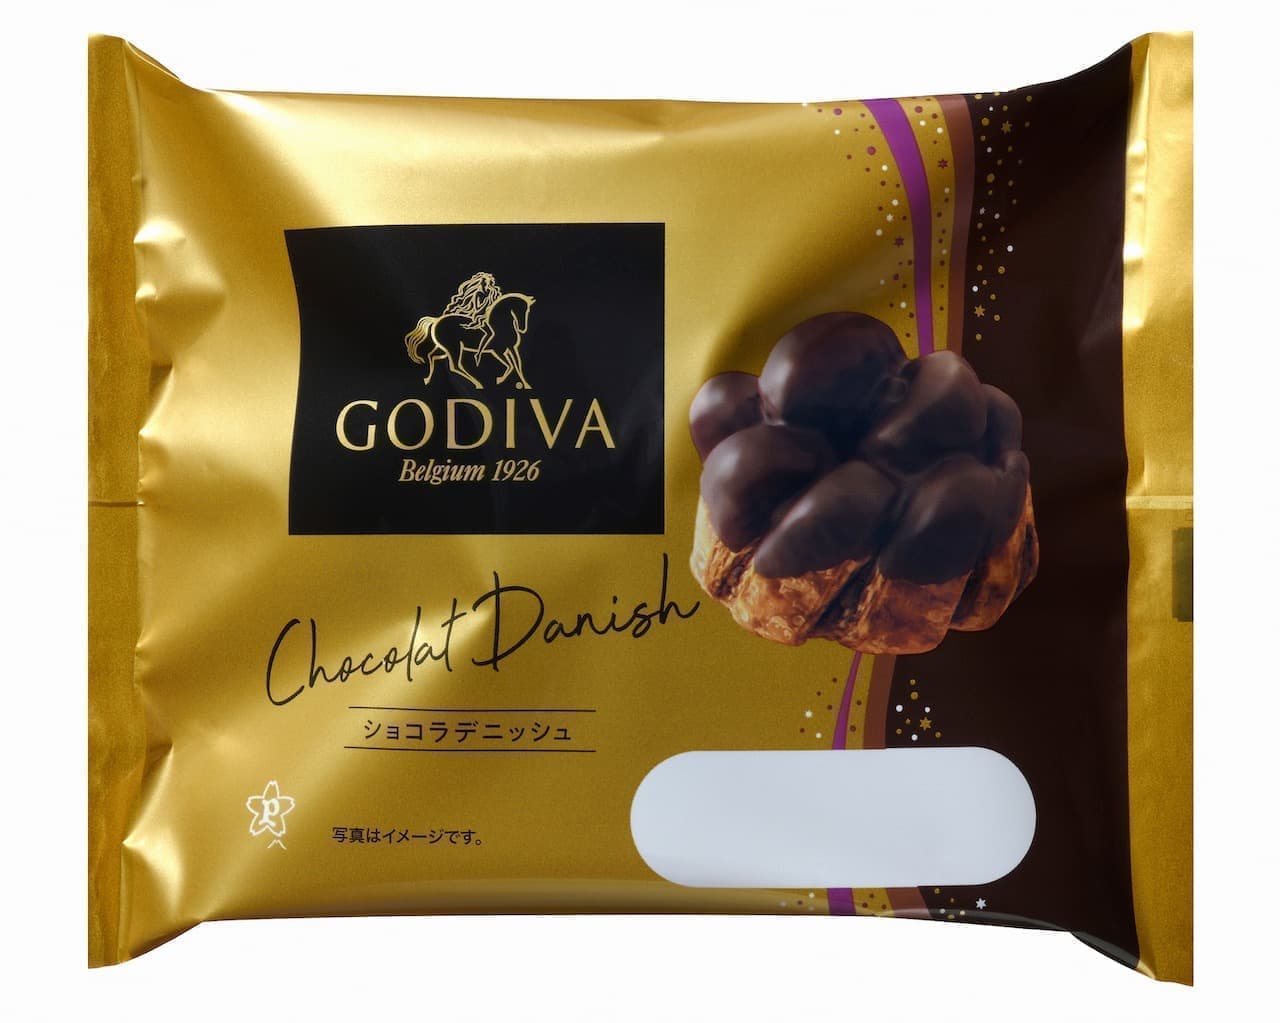 Godiva "Chocolat Danish